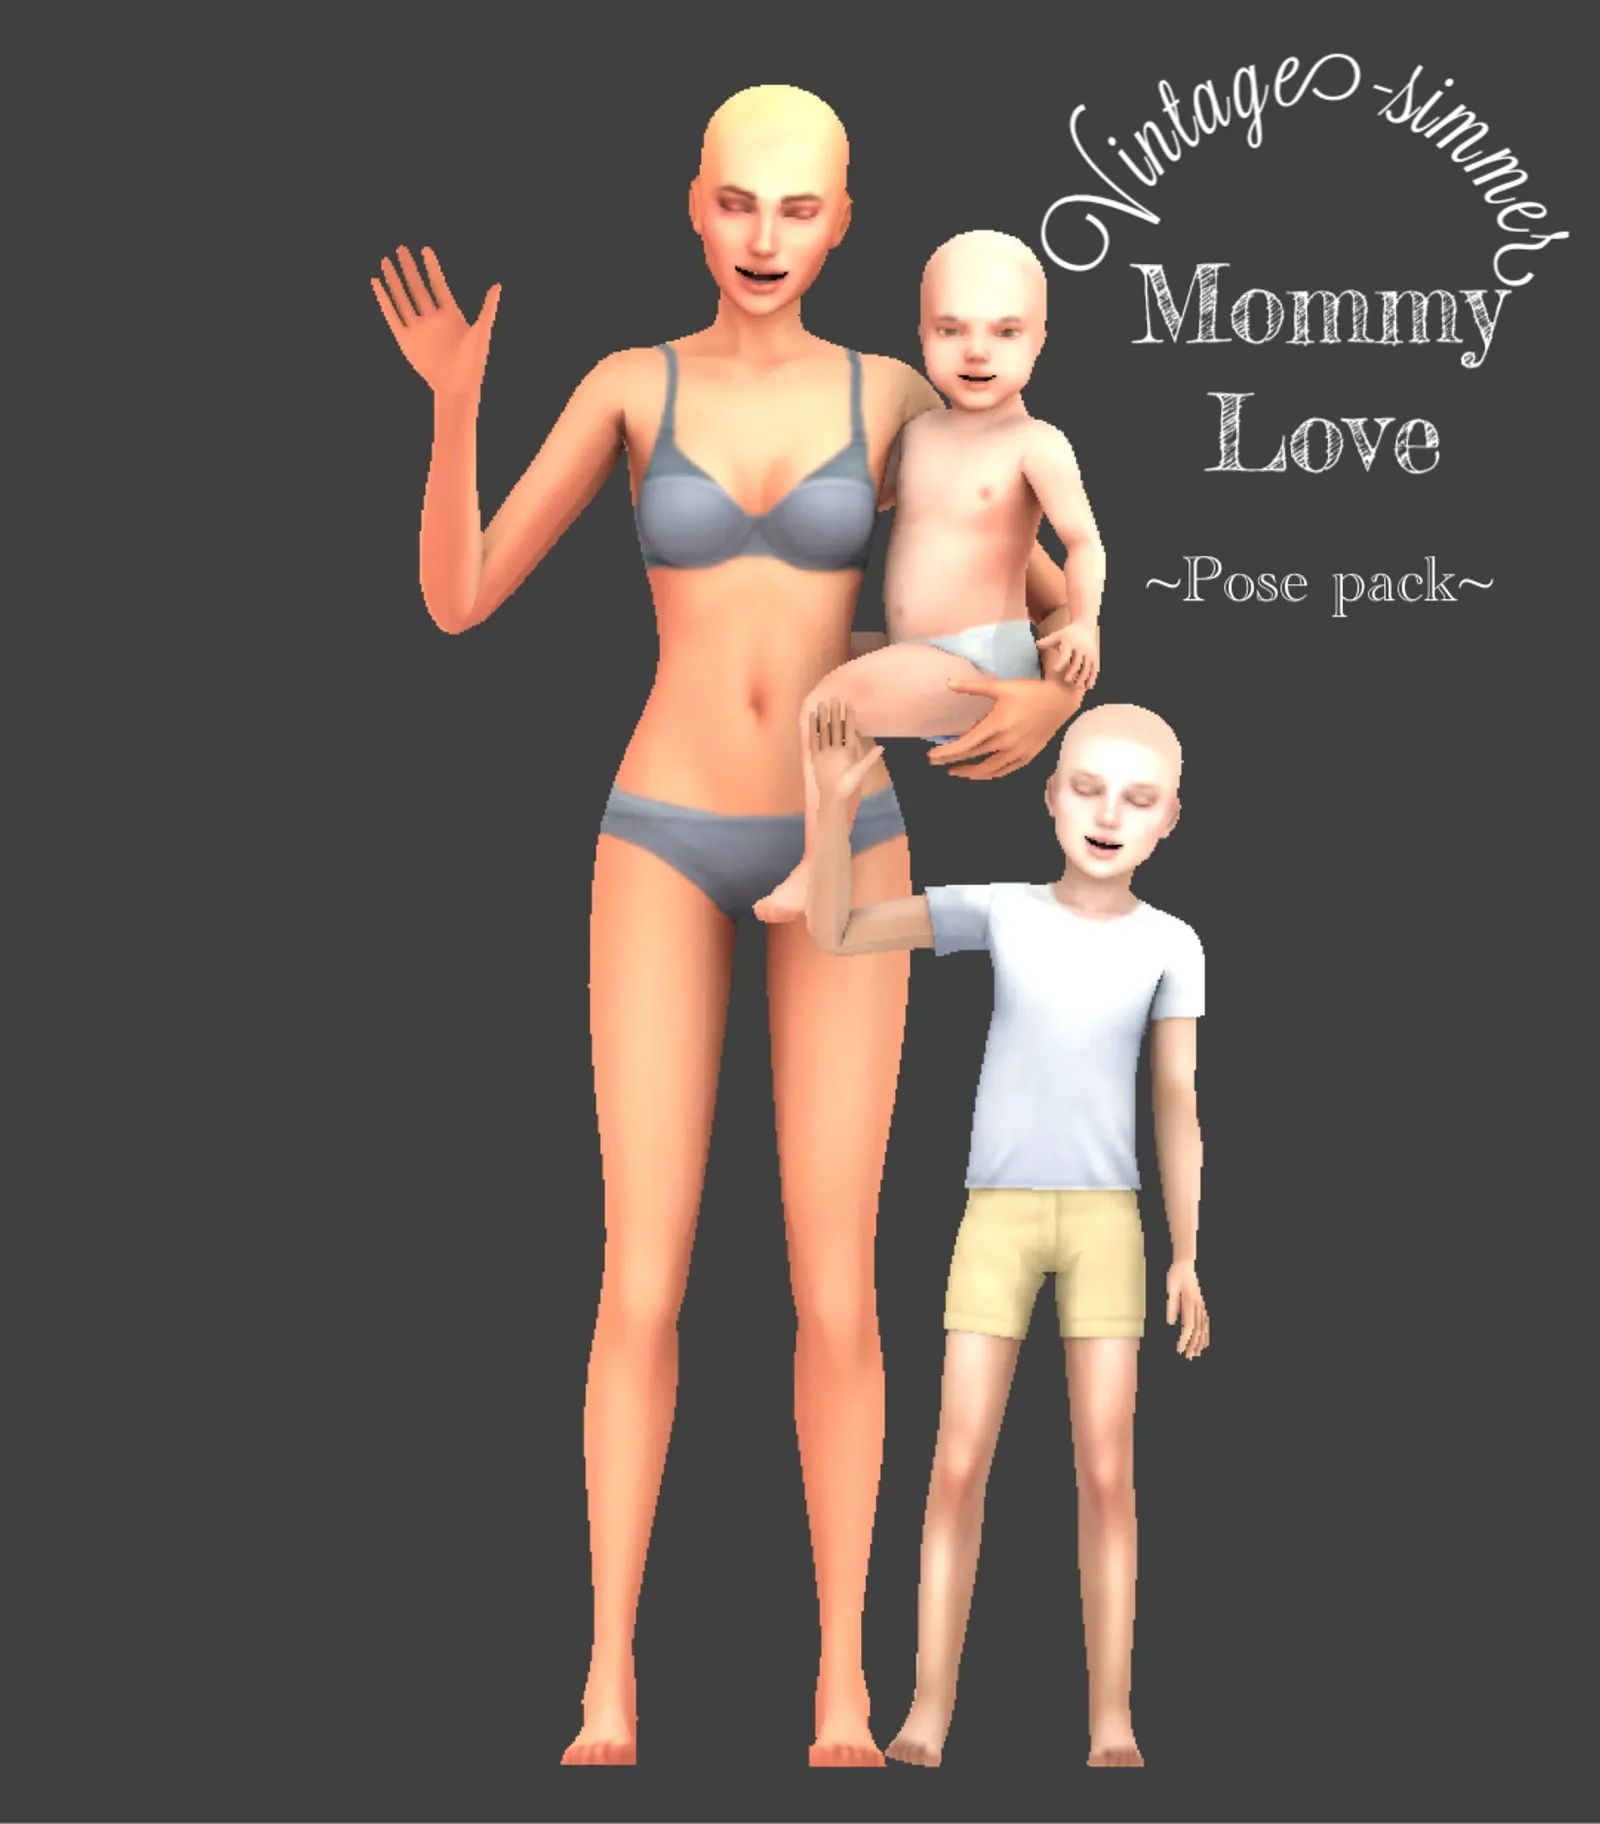 ???Mommy Love ??? Public release: September 5